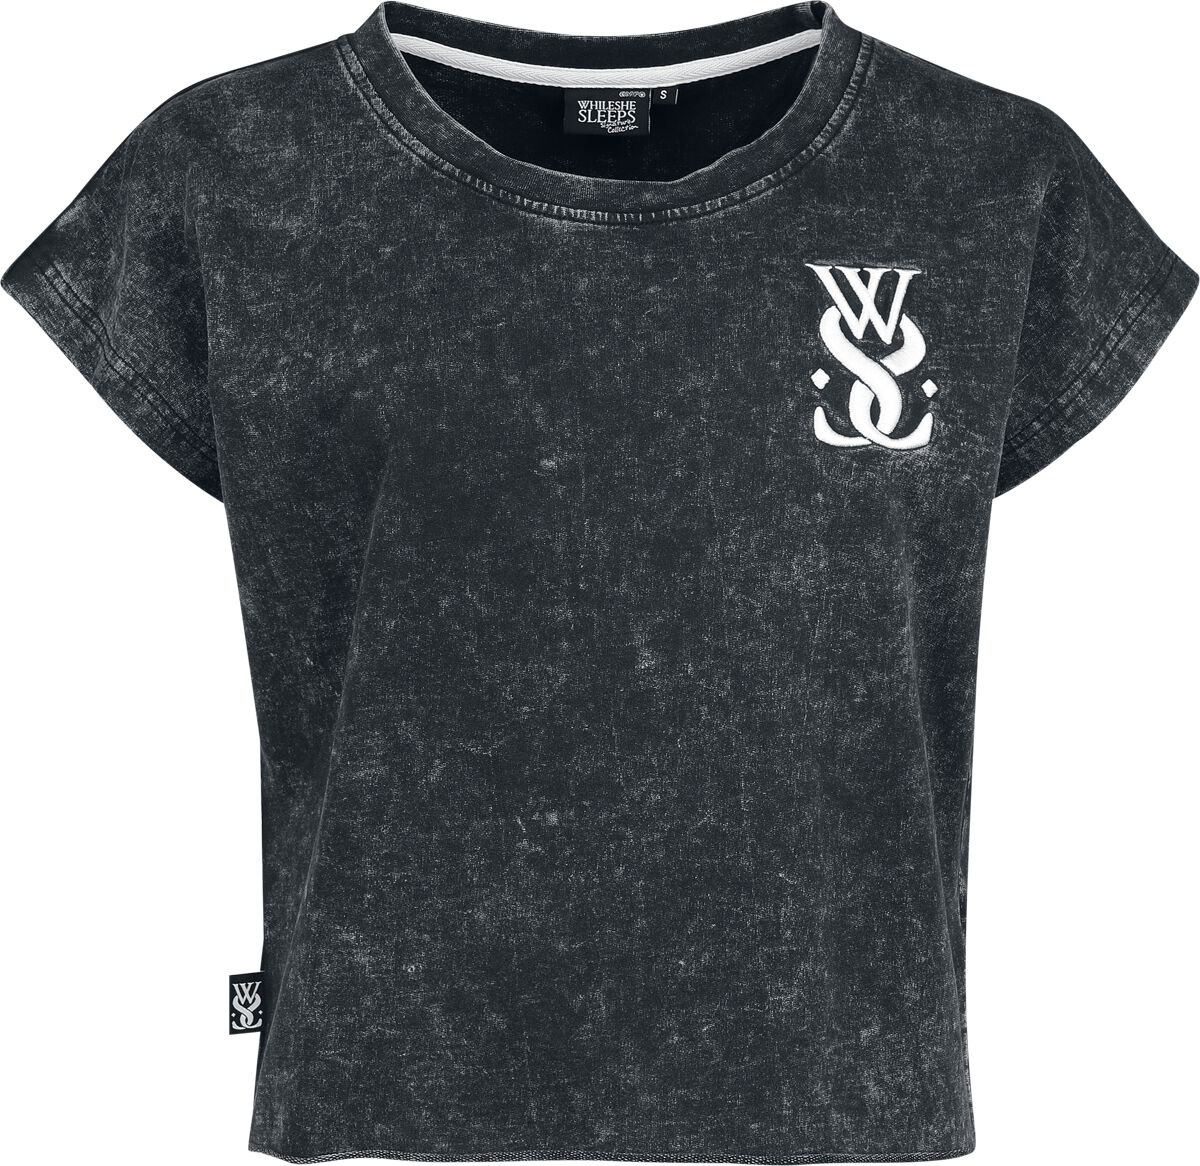 While She Sleeps T-Shirt - EMP Signature Collection - XS bis 3XL - für Damen - Größe M - grau  - EMP exklusives Merchandise!